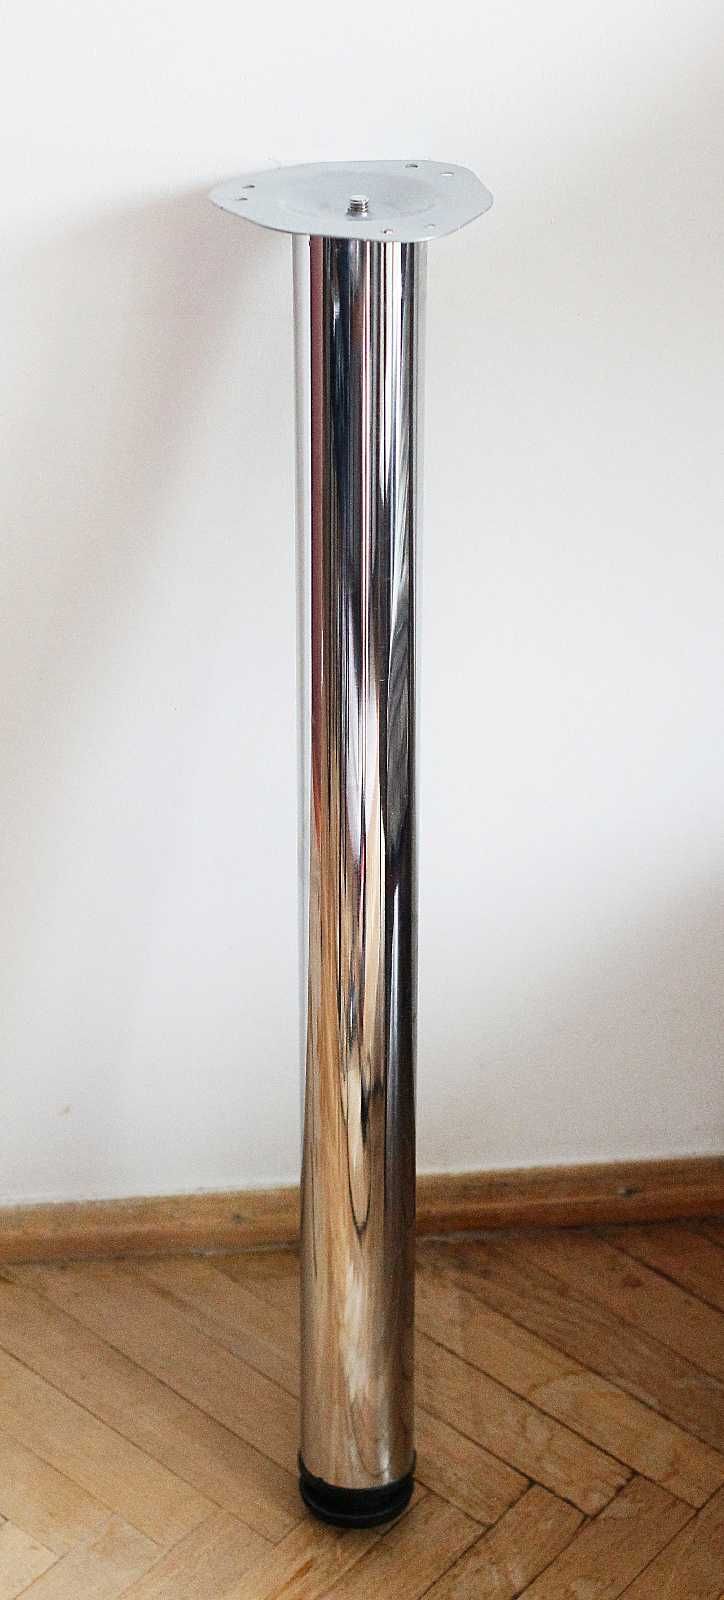 Metalowa nogaL=70cm fi6cm-cena za 1szt.kolor chromowany,posiadam10szt